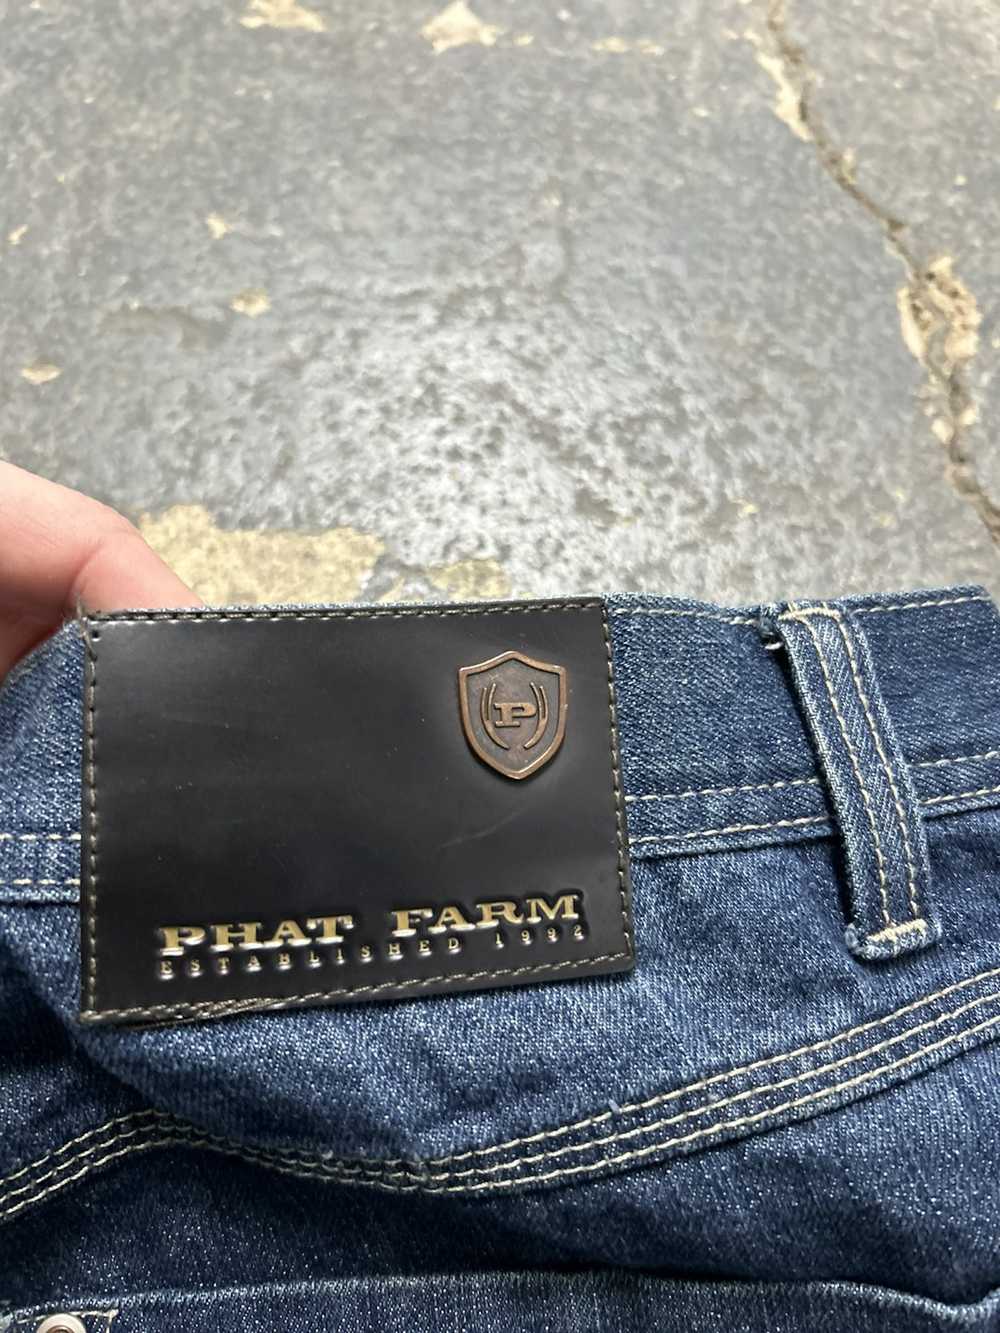 Phat Farm Phat farm denim jeans - image 8